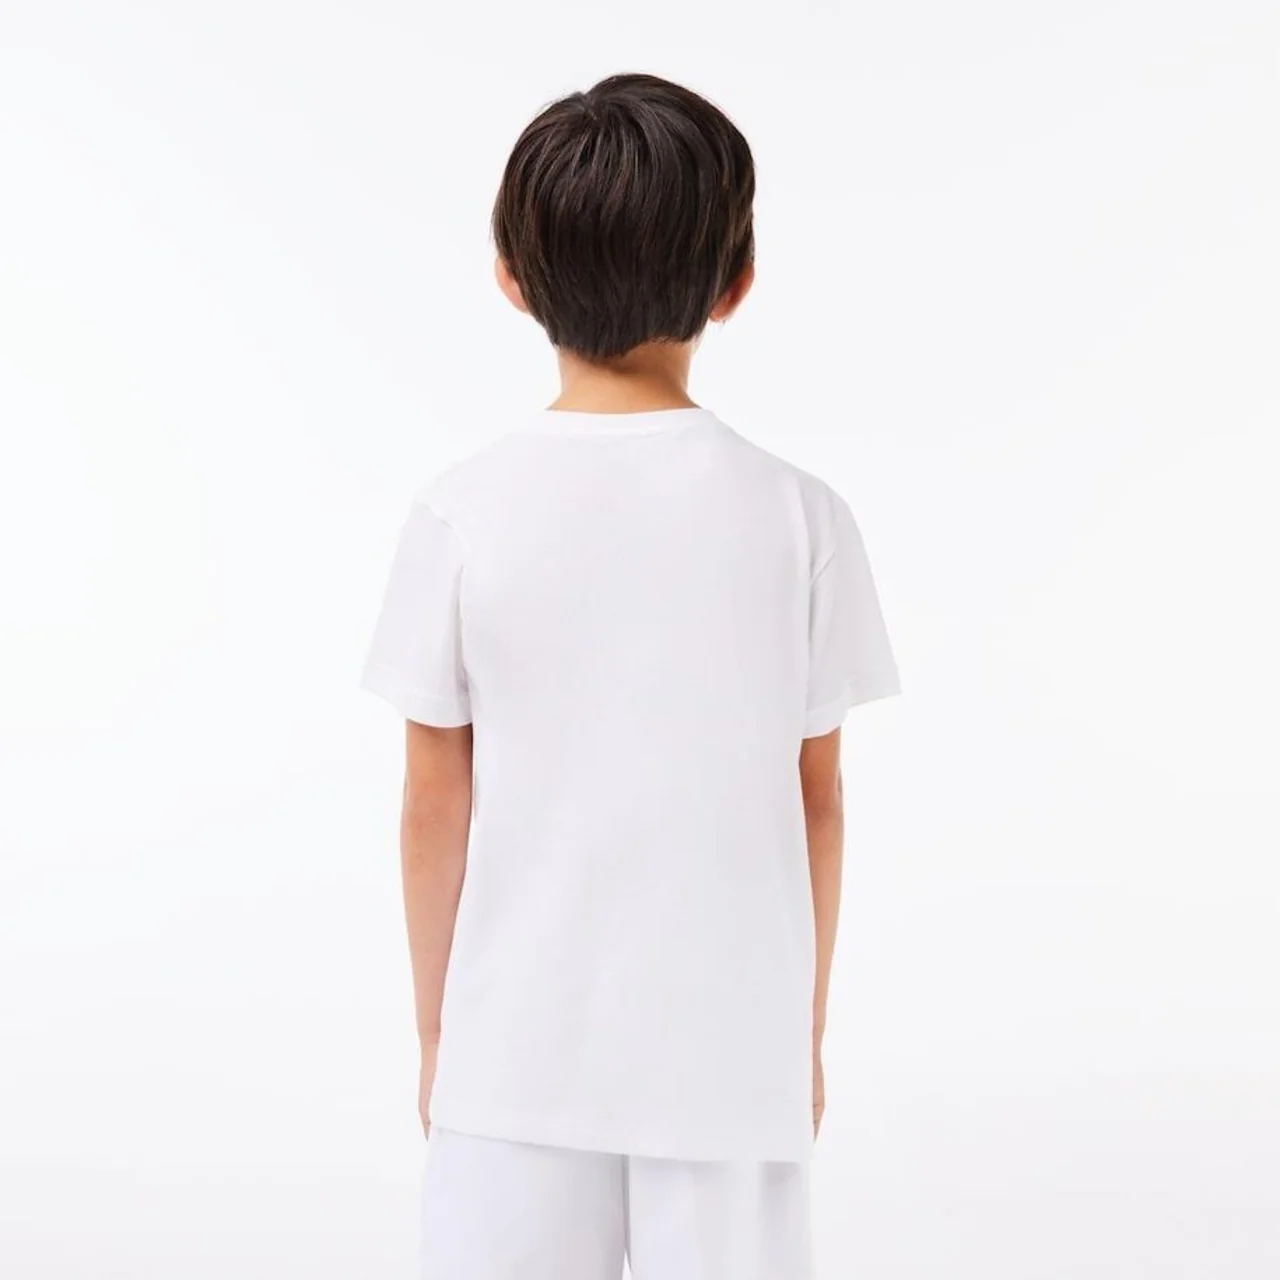 Lacoste Boys Sport Breathable Cotton Blend T-Shirt White